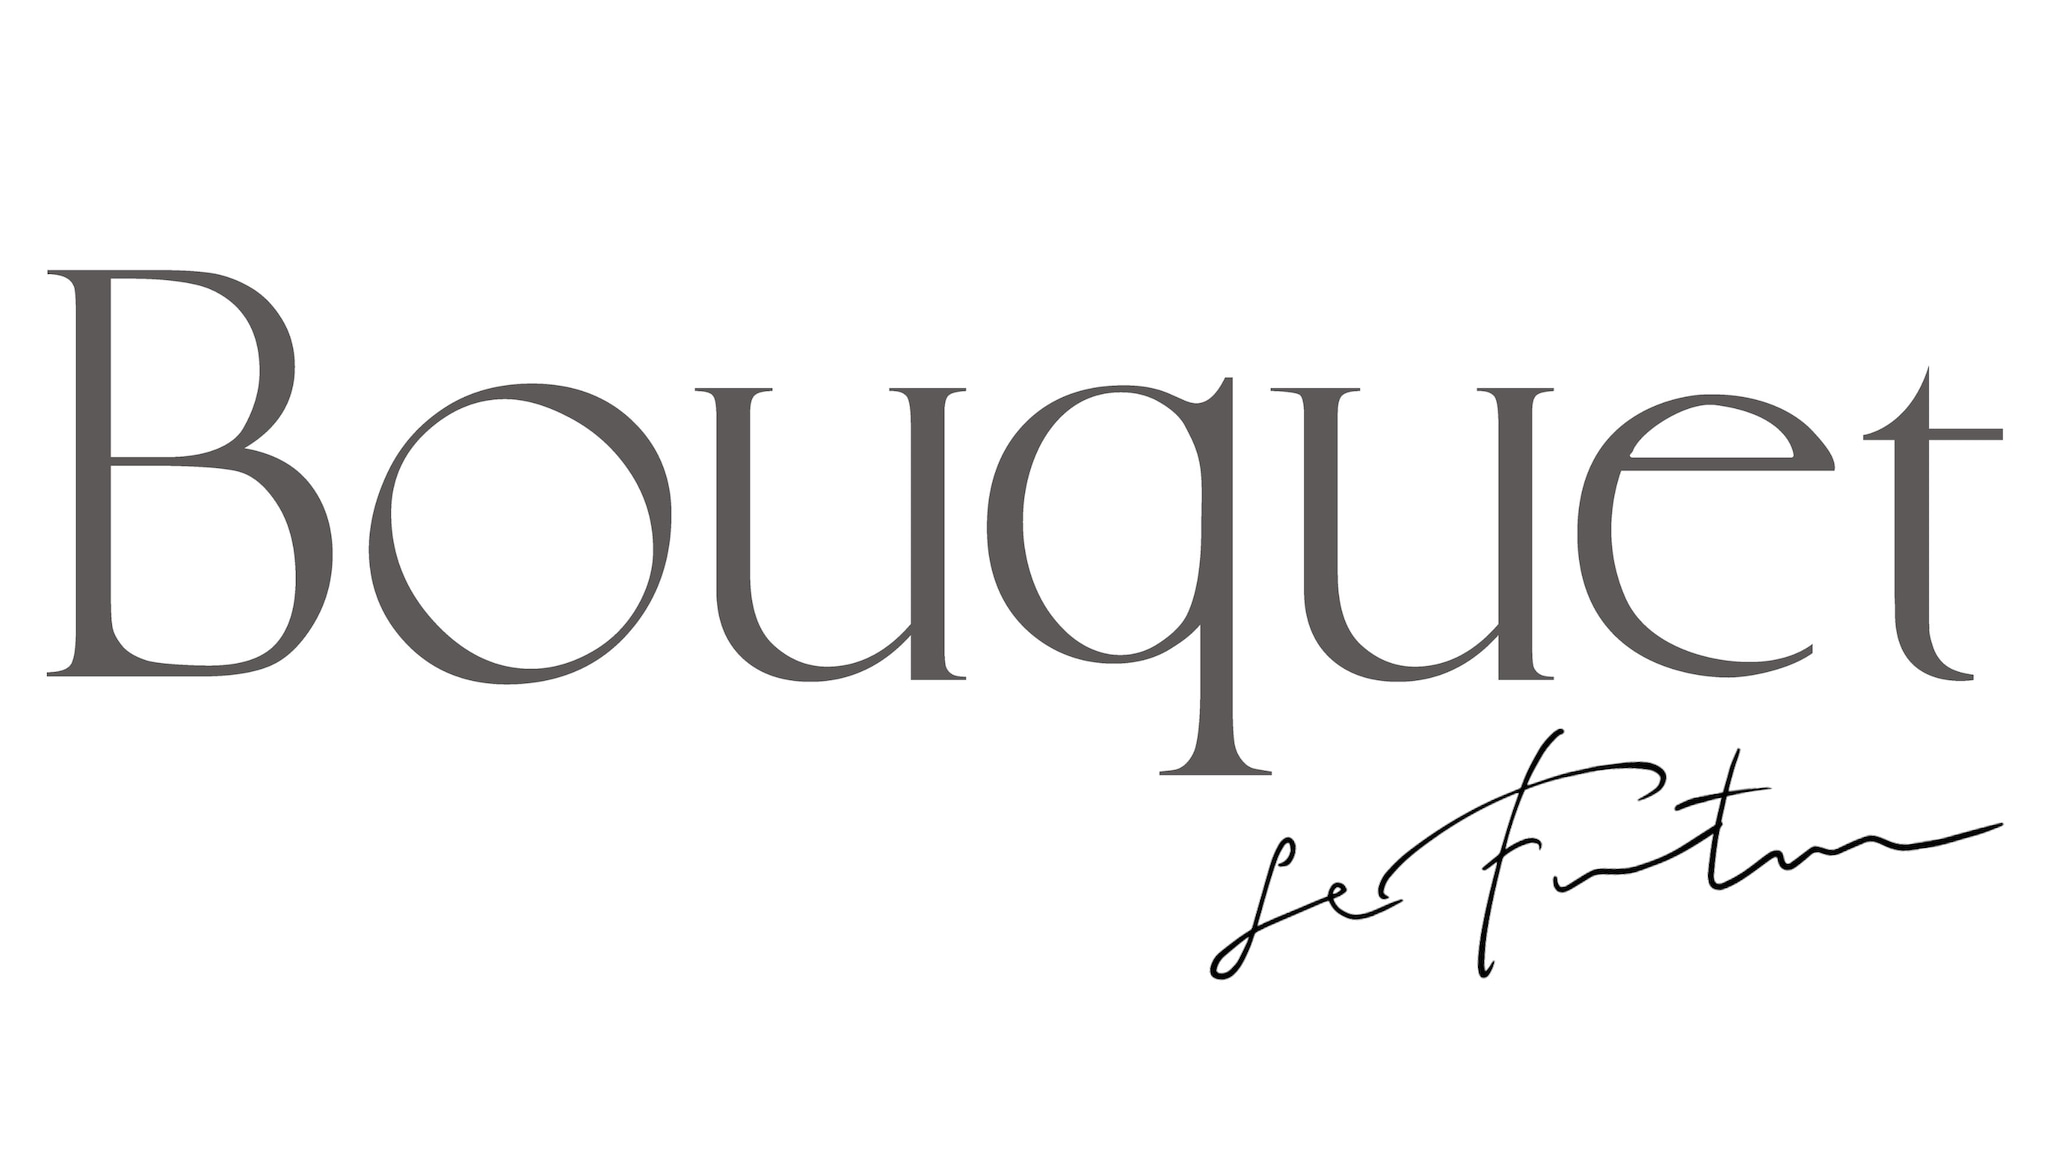 Le Futur  by Bouquet ~ ル フュチュール ~